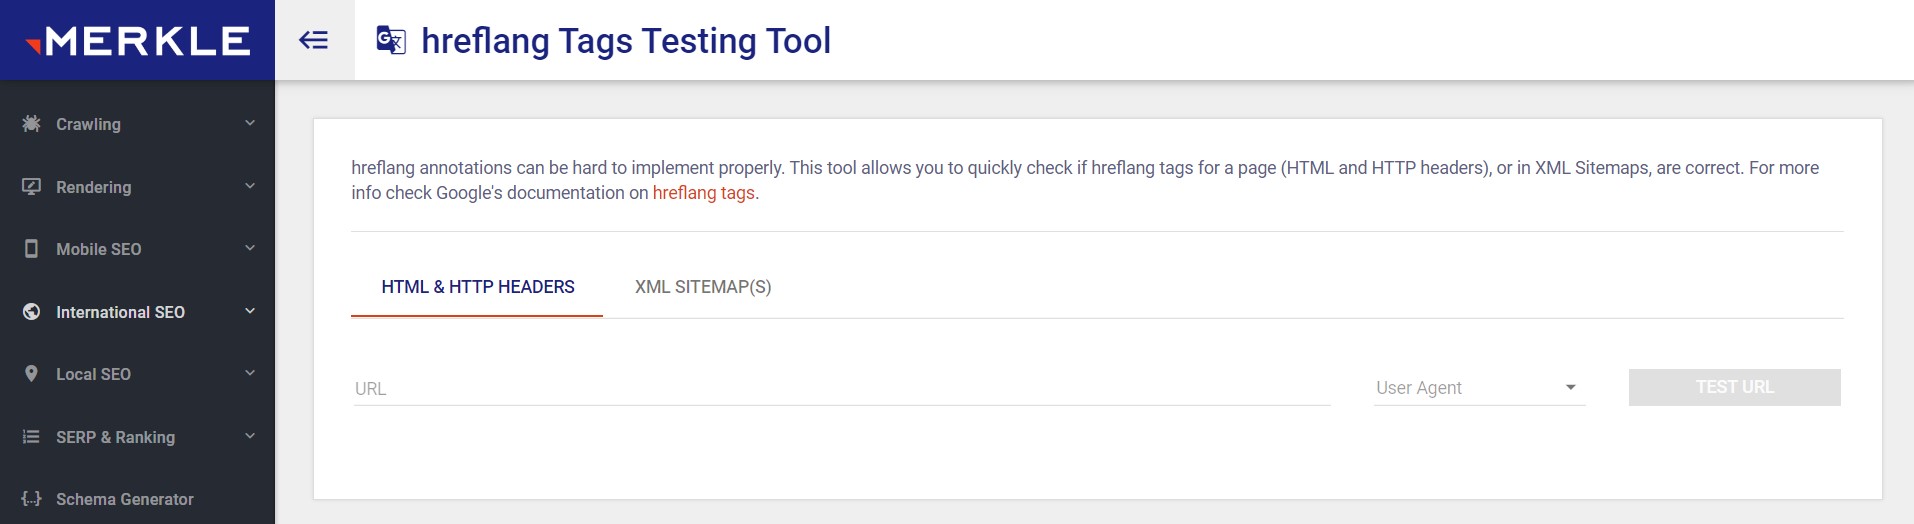 Hreflang tags testing tool